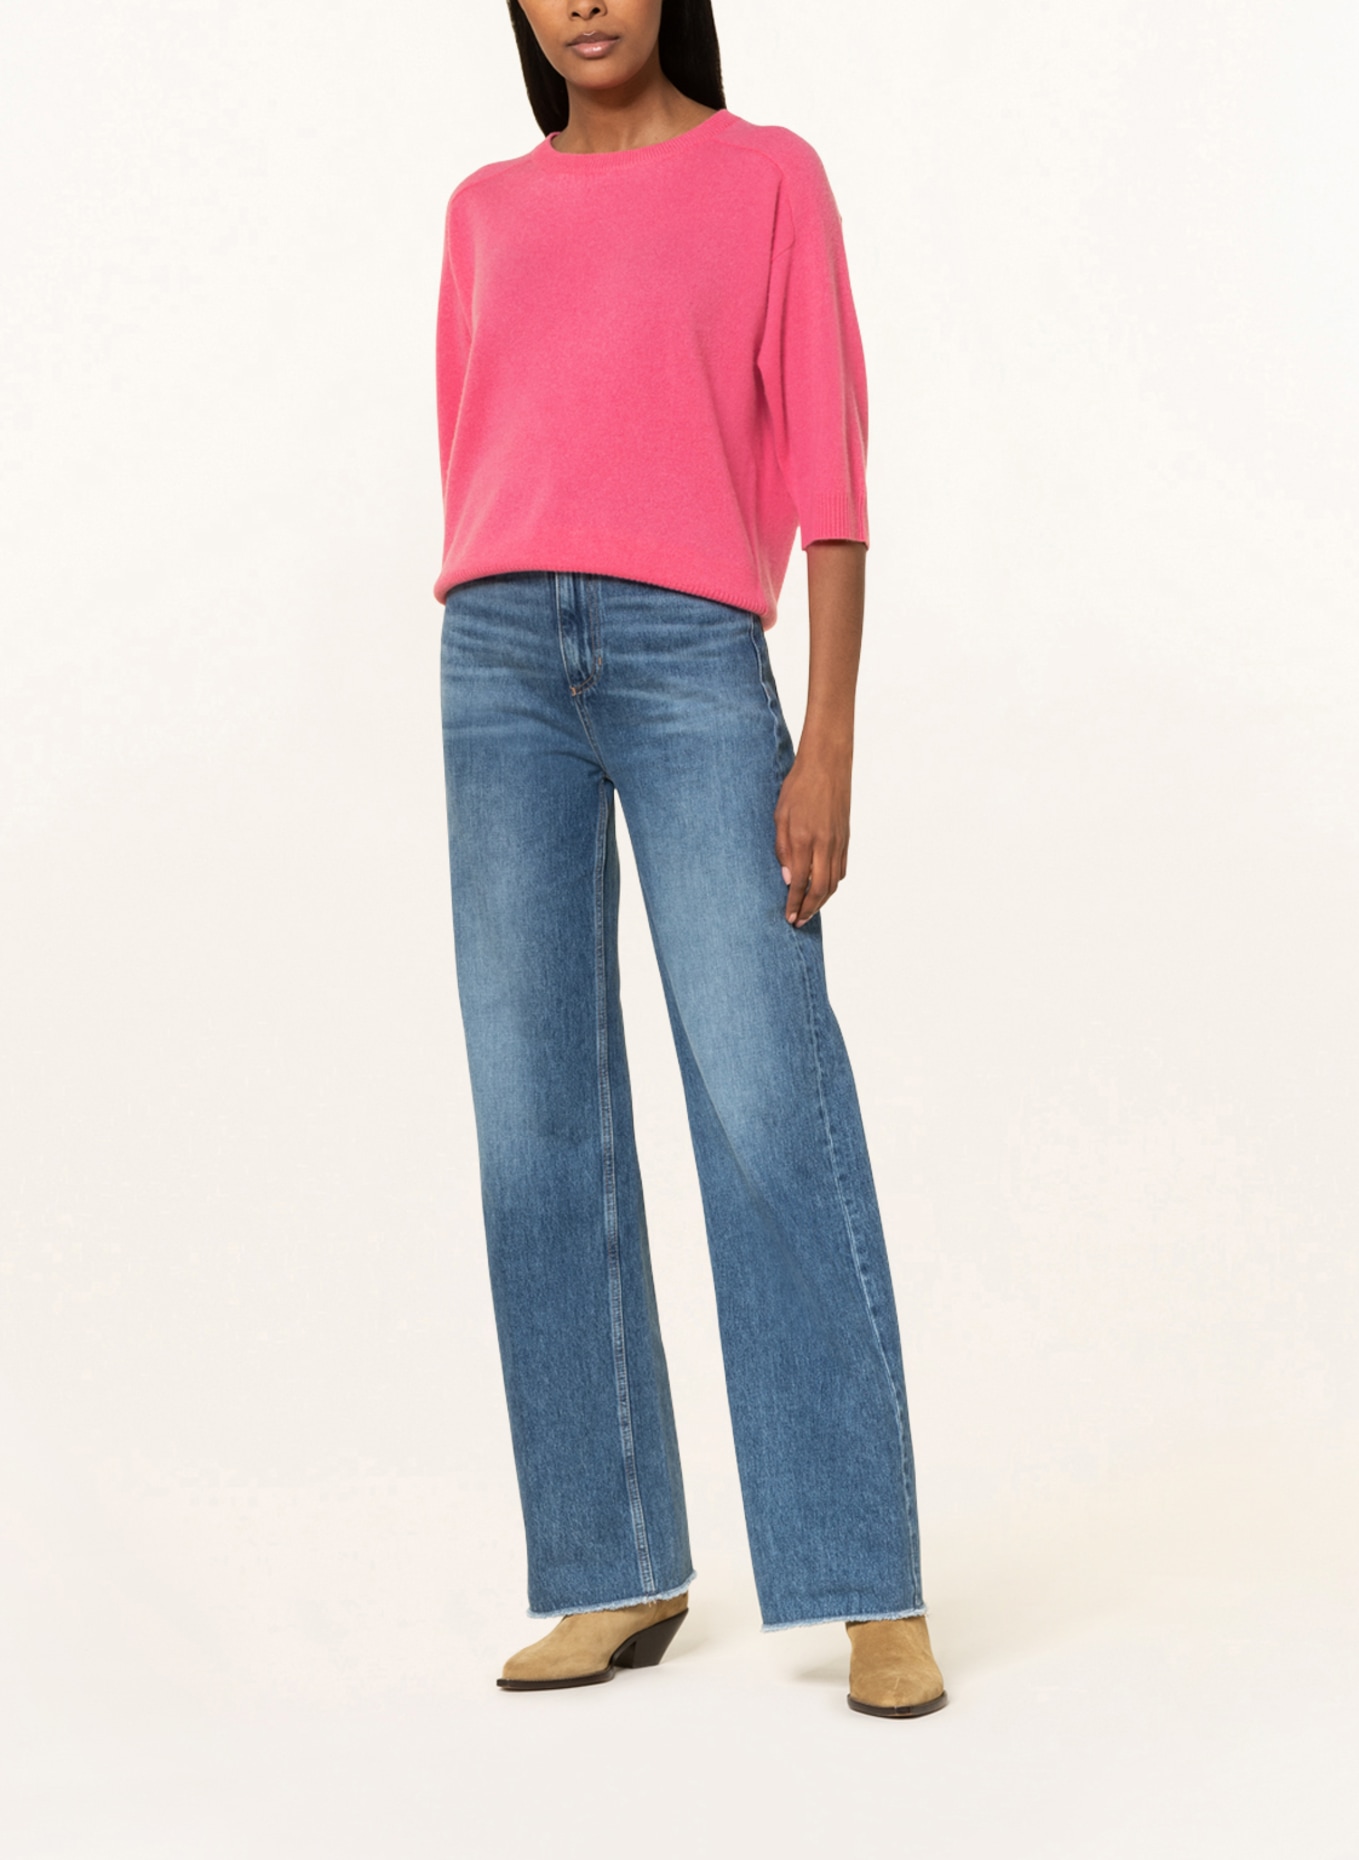 HEMISPHERE Cashmere-Pullover mit 3/4-Arm, Farbe: PINK (Bild 2)